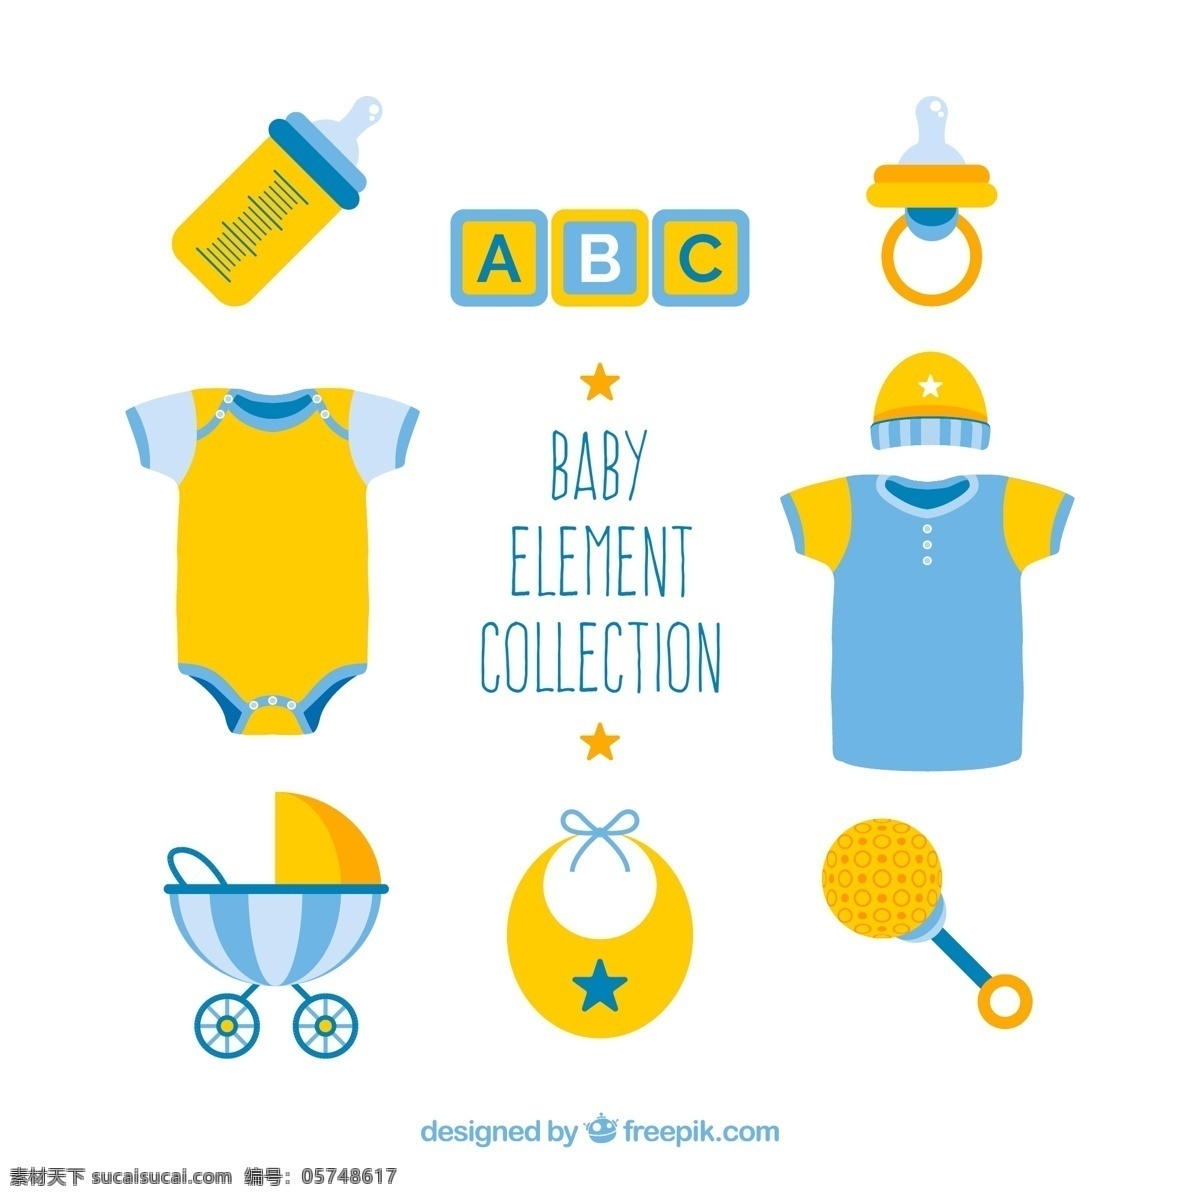 蓝色 黄色 婴儿 物品 奶瓶 积木 字母 安抚奶嘴 婴儿爬服 生活用品 生活百科